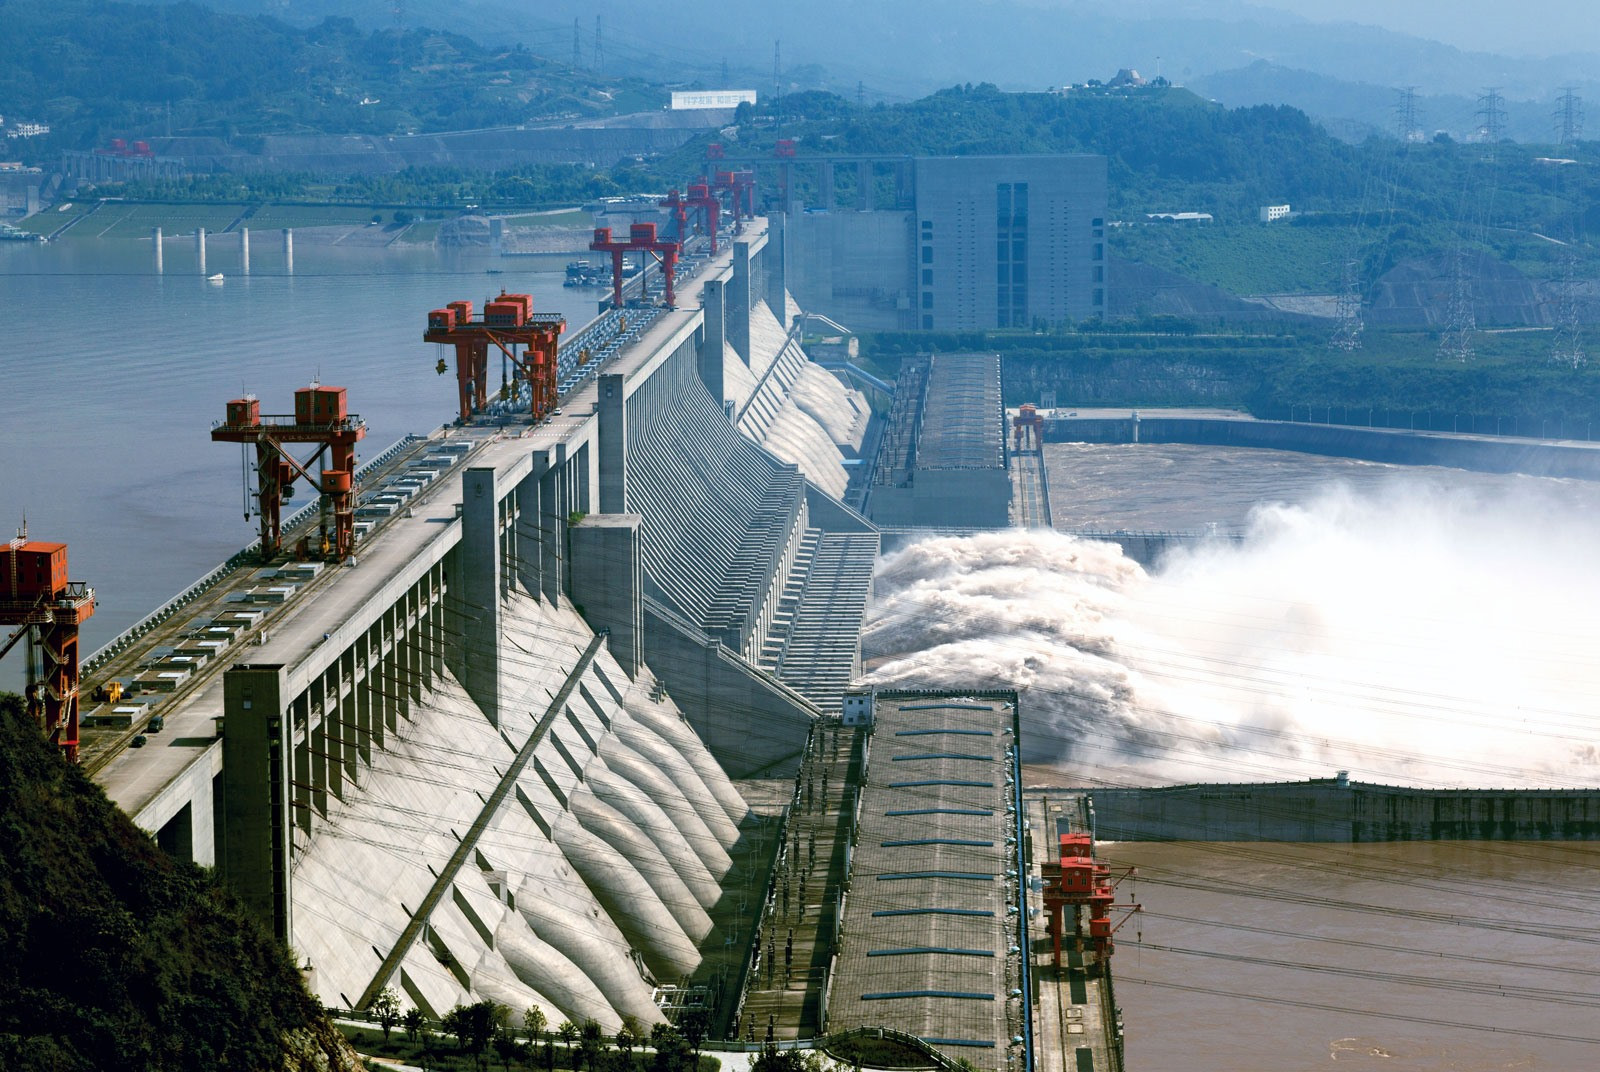 Đập Dương Khúc dự kiến hoàn thành sau hai năm và sẽ cung cấp 5 tỷ kilowatt giờ điện mỗi năm cho quốc gia đông dân nhất thế giới.